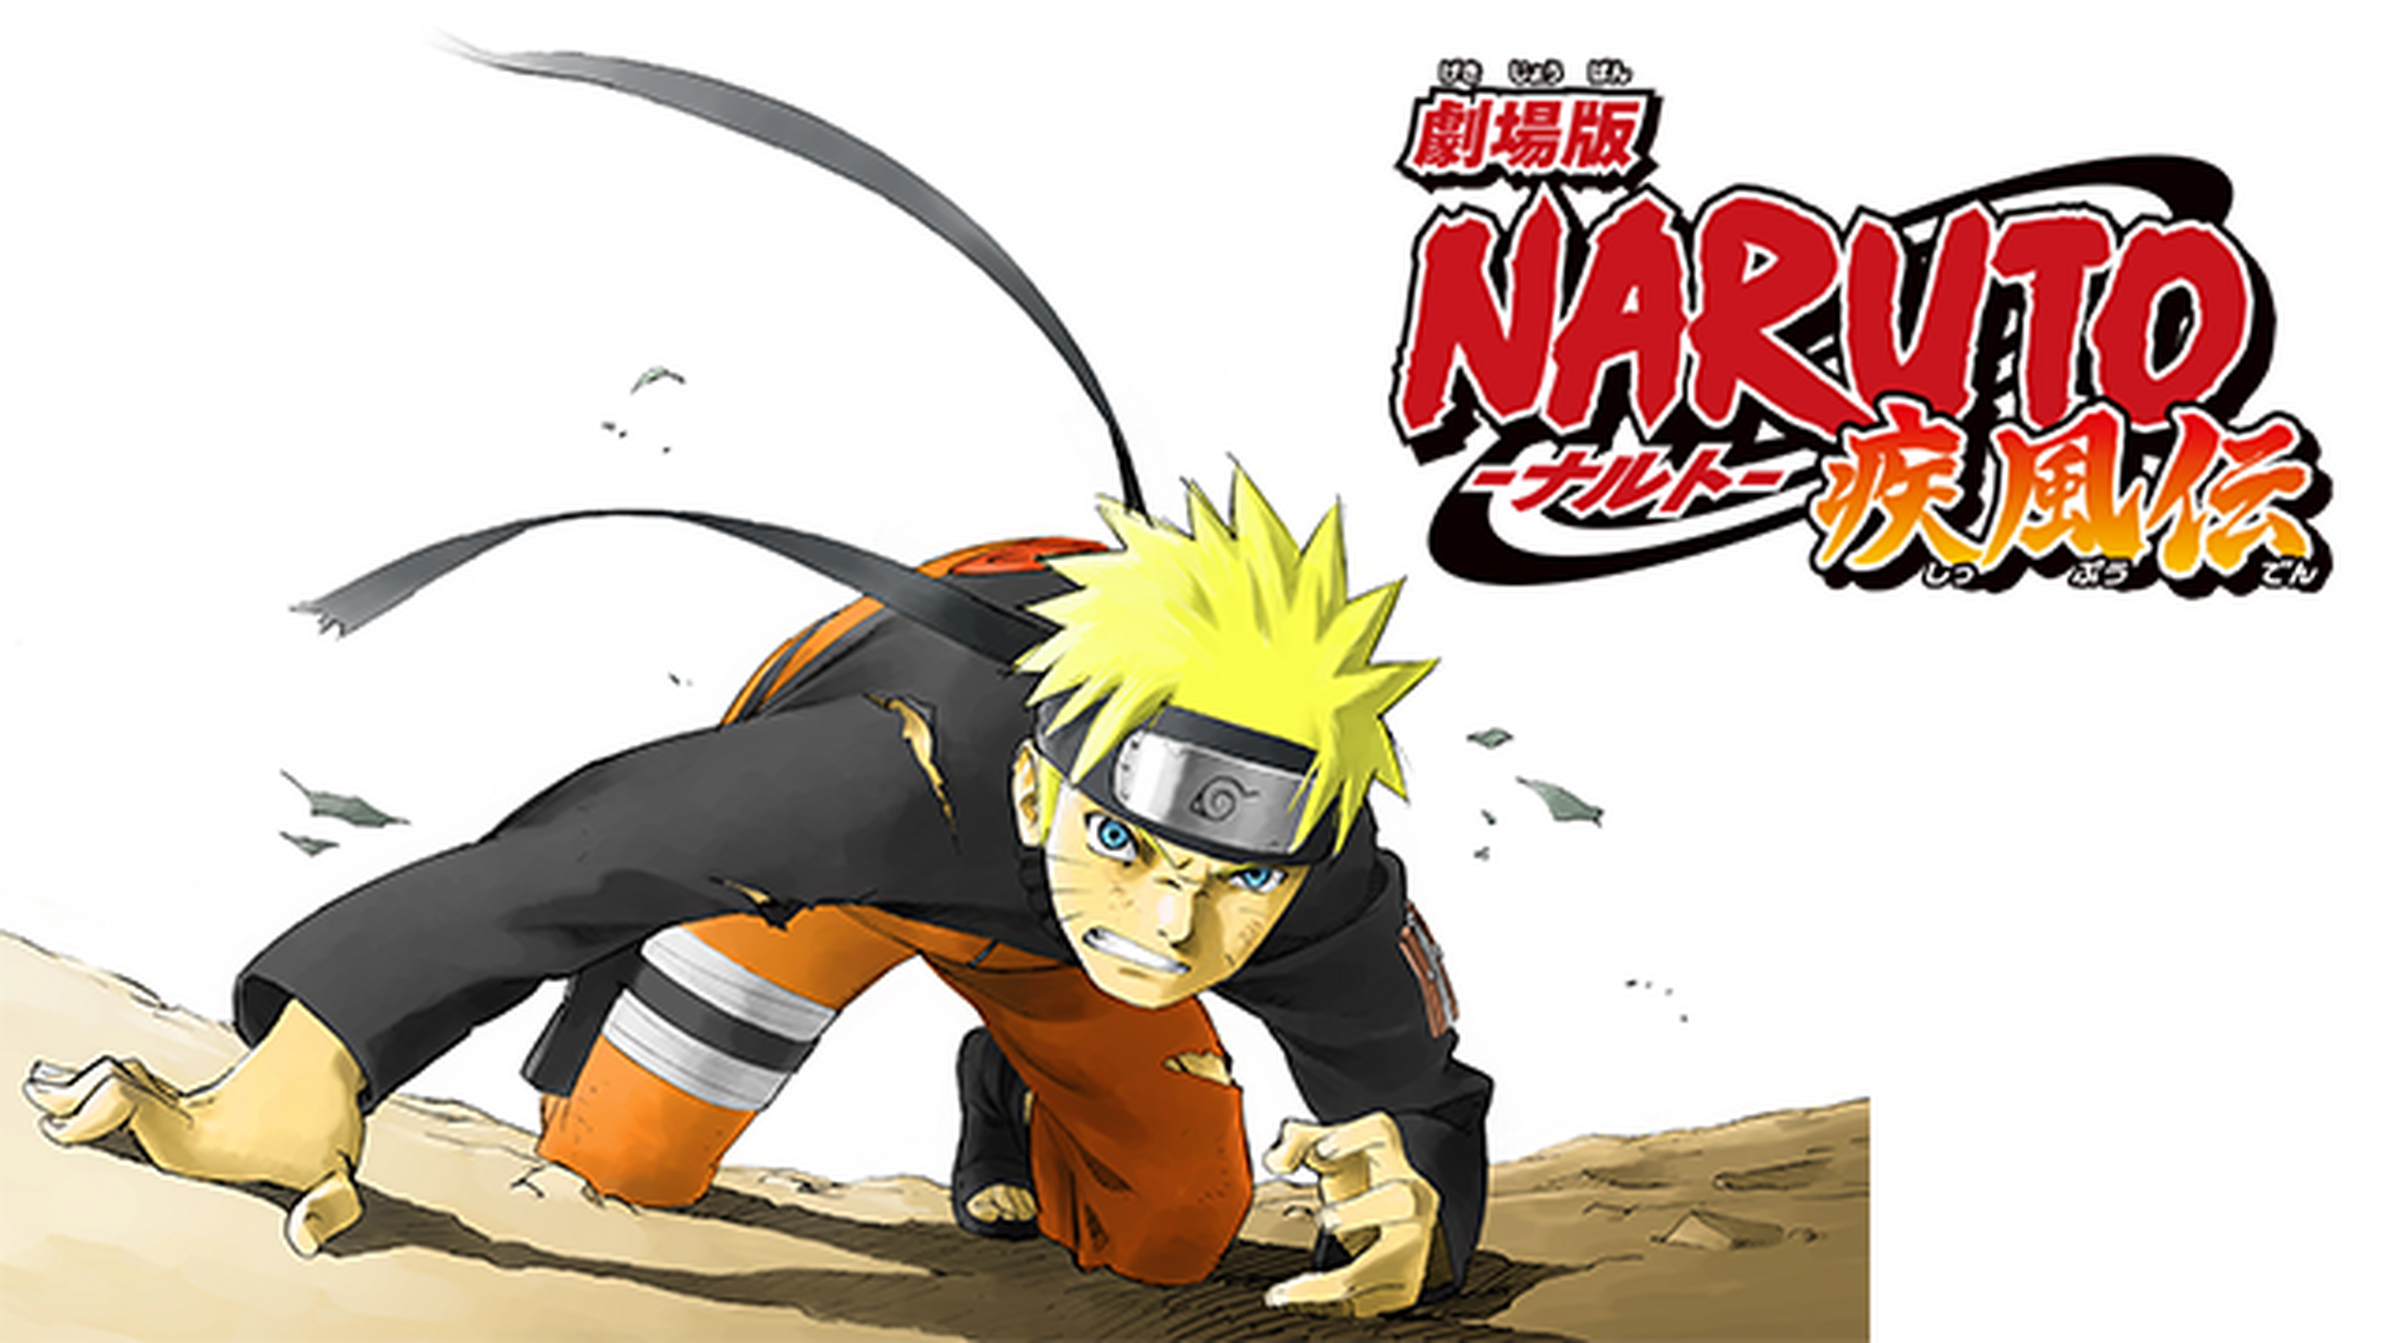 劇場版 Naruto ナルト 疾風伝のアニメ無料動画をフル視聴する方法と配信サービス一覧まとめ